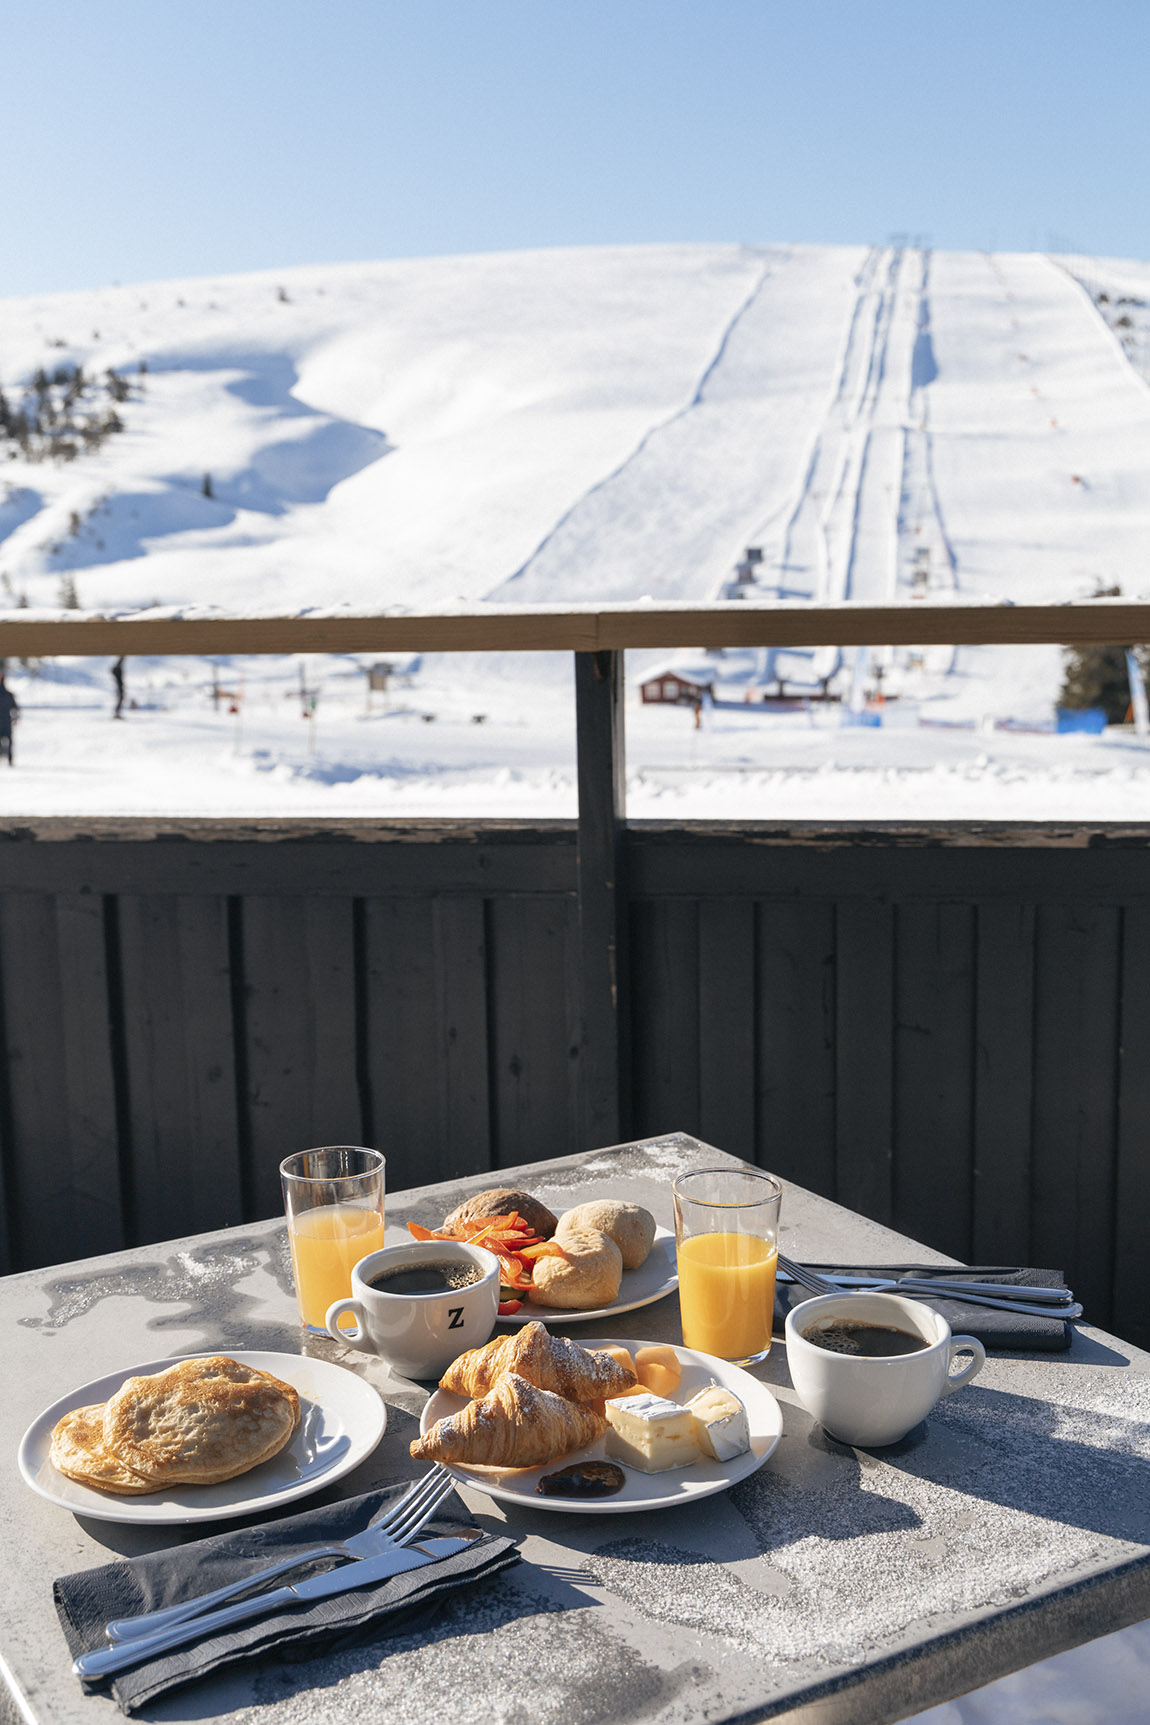 Sälens Högfjällshotell: World class skiing in iconic surroundings